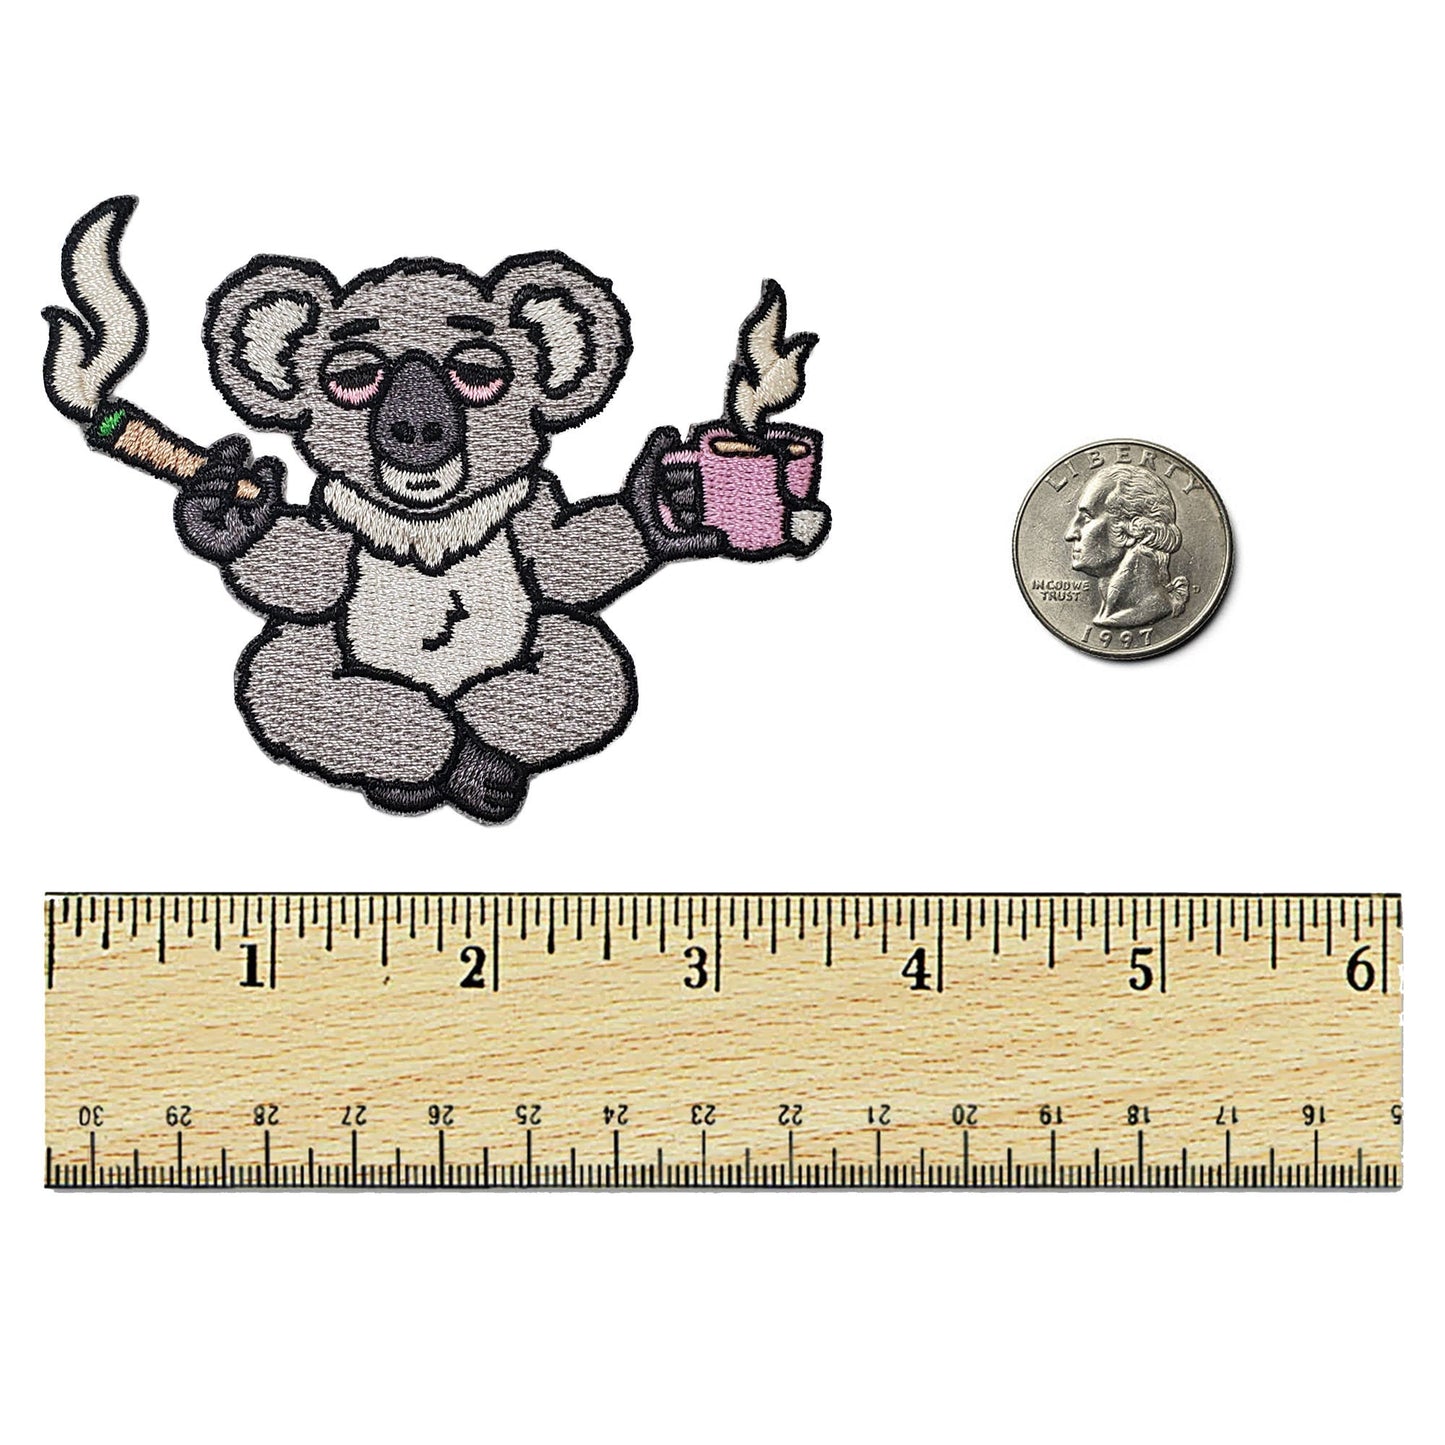 High Koala Tea Pun Patch - Kolorspun Enamel Pins